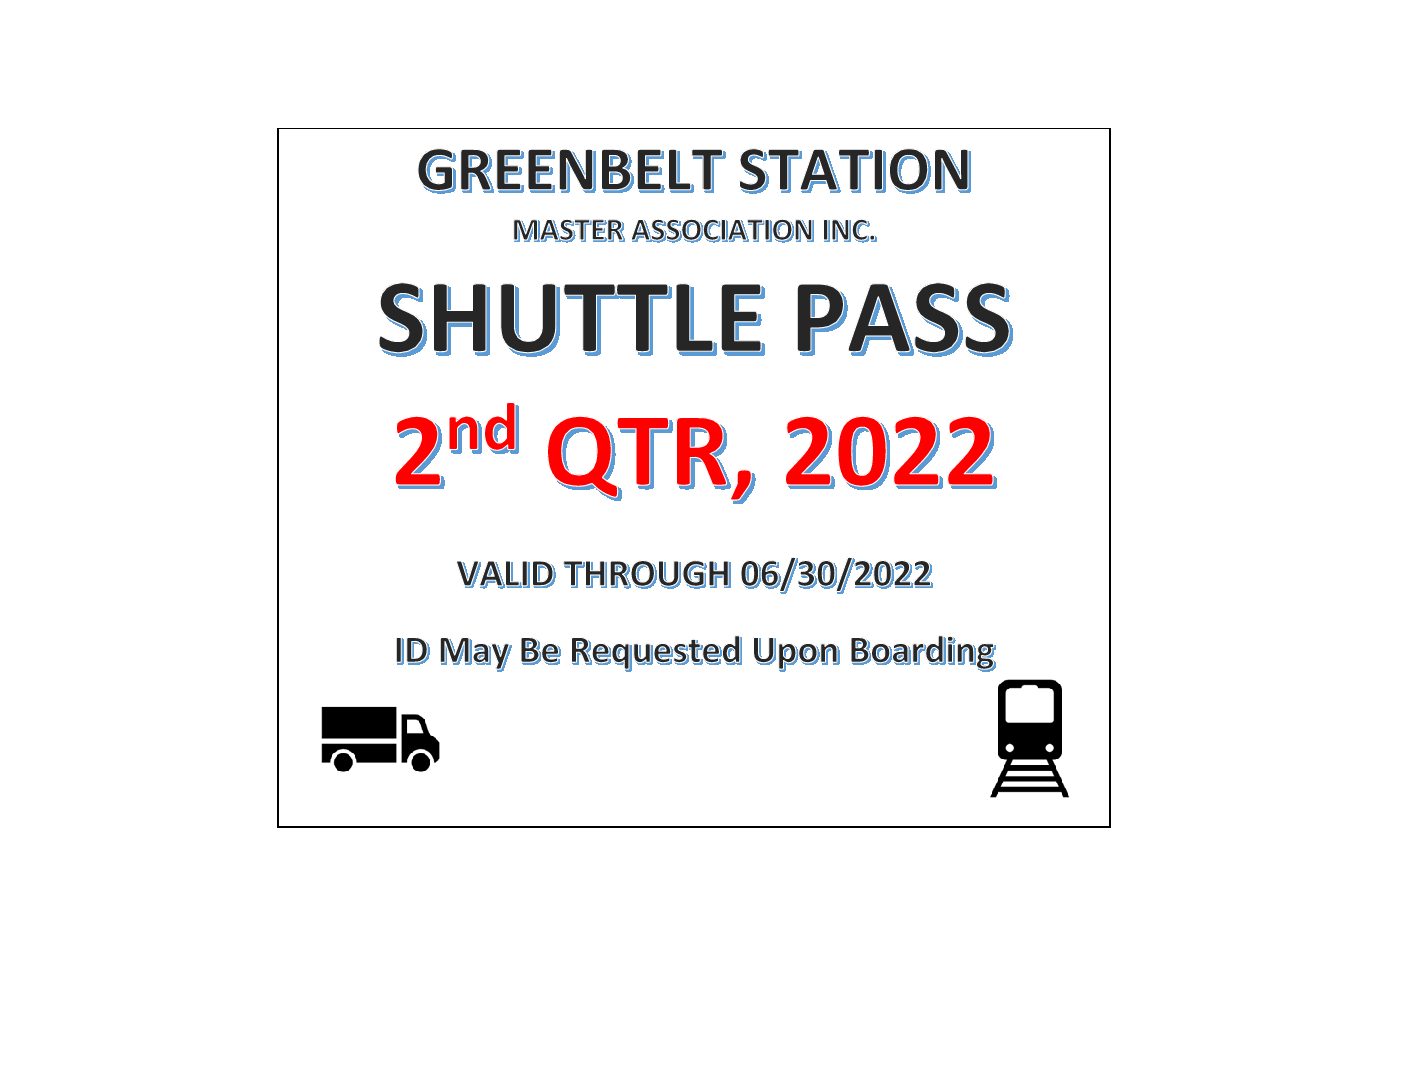 GREENBELT STATION SHUTTLE PASS 2nd Qtr 2022